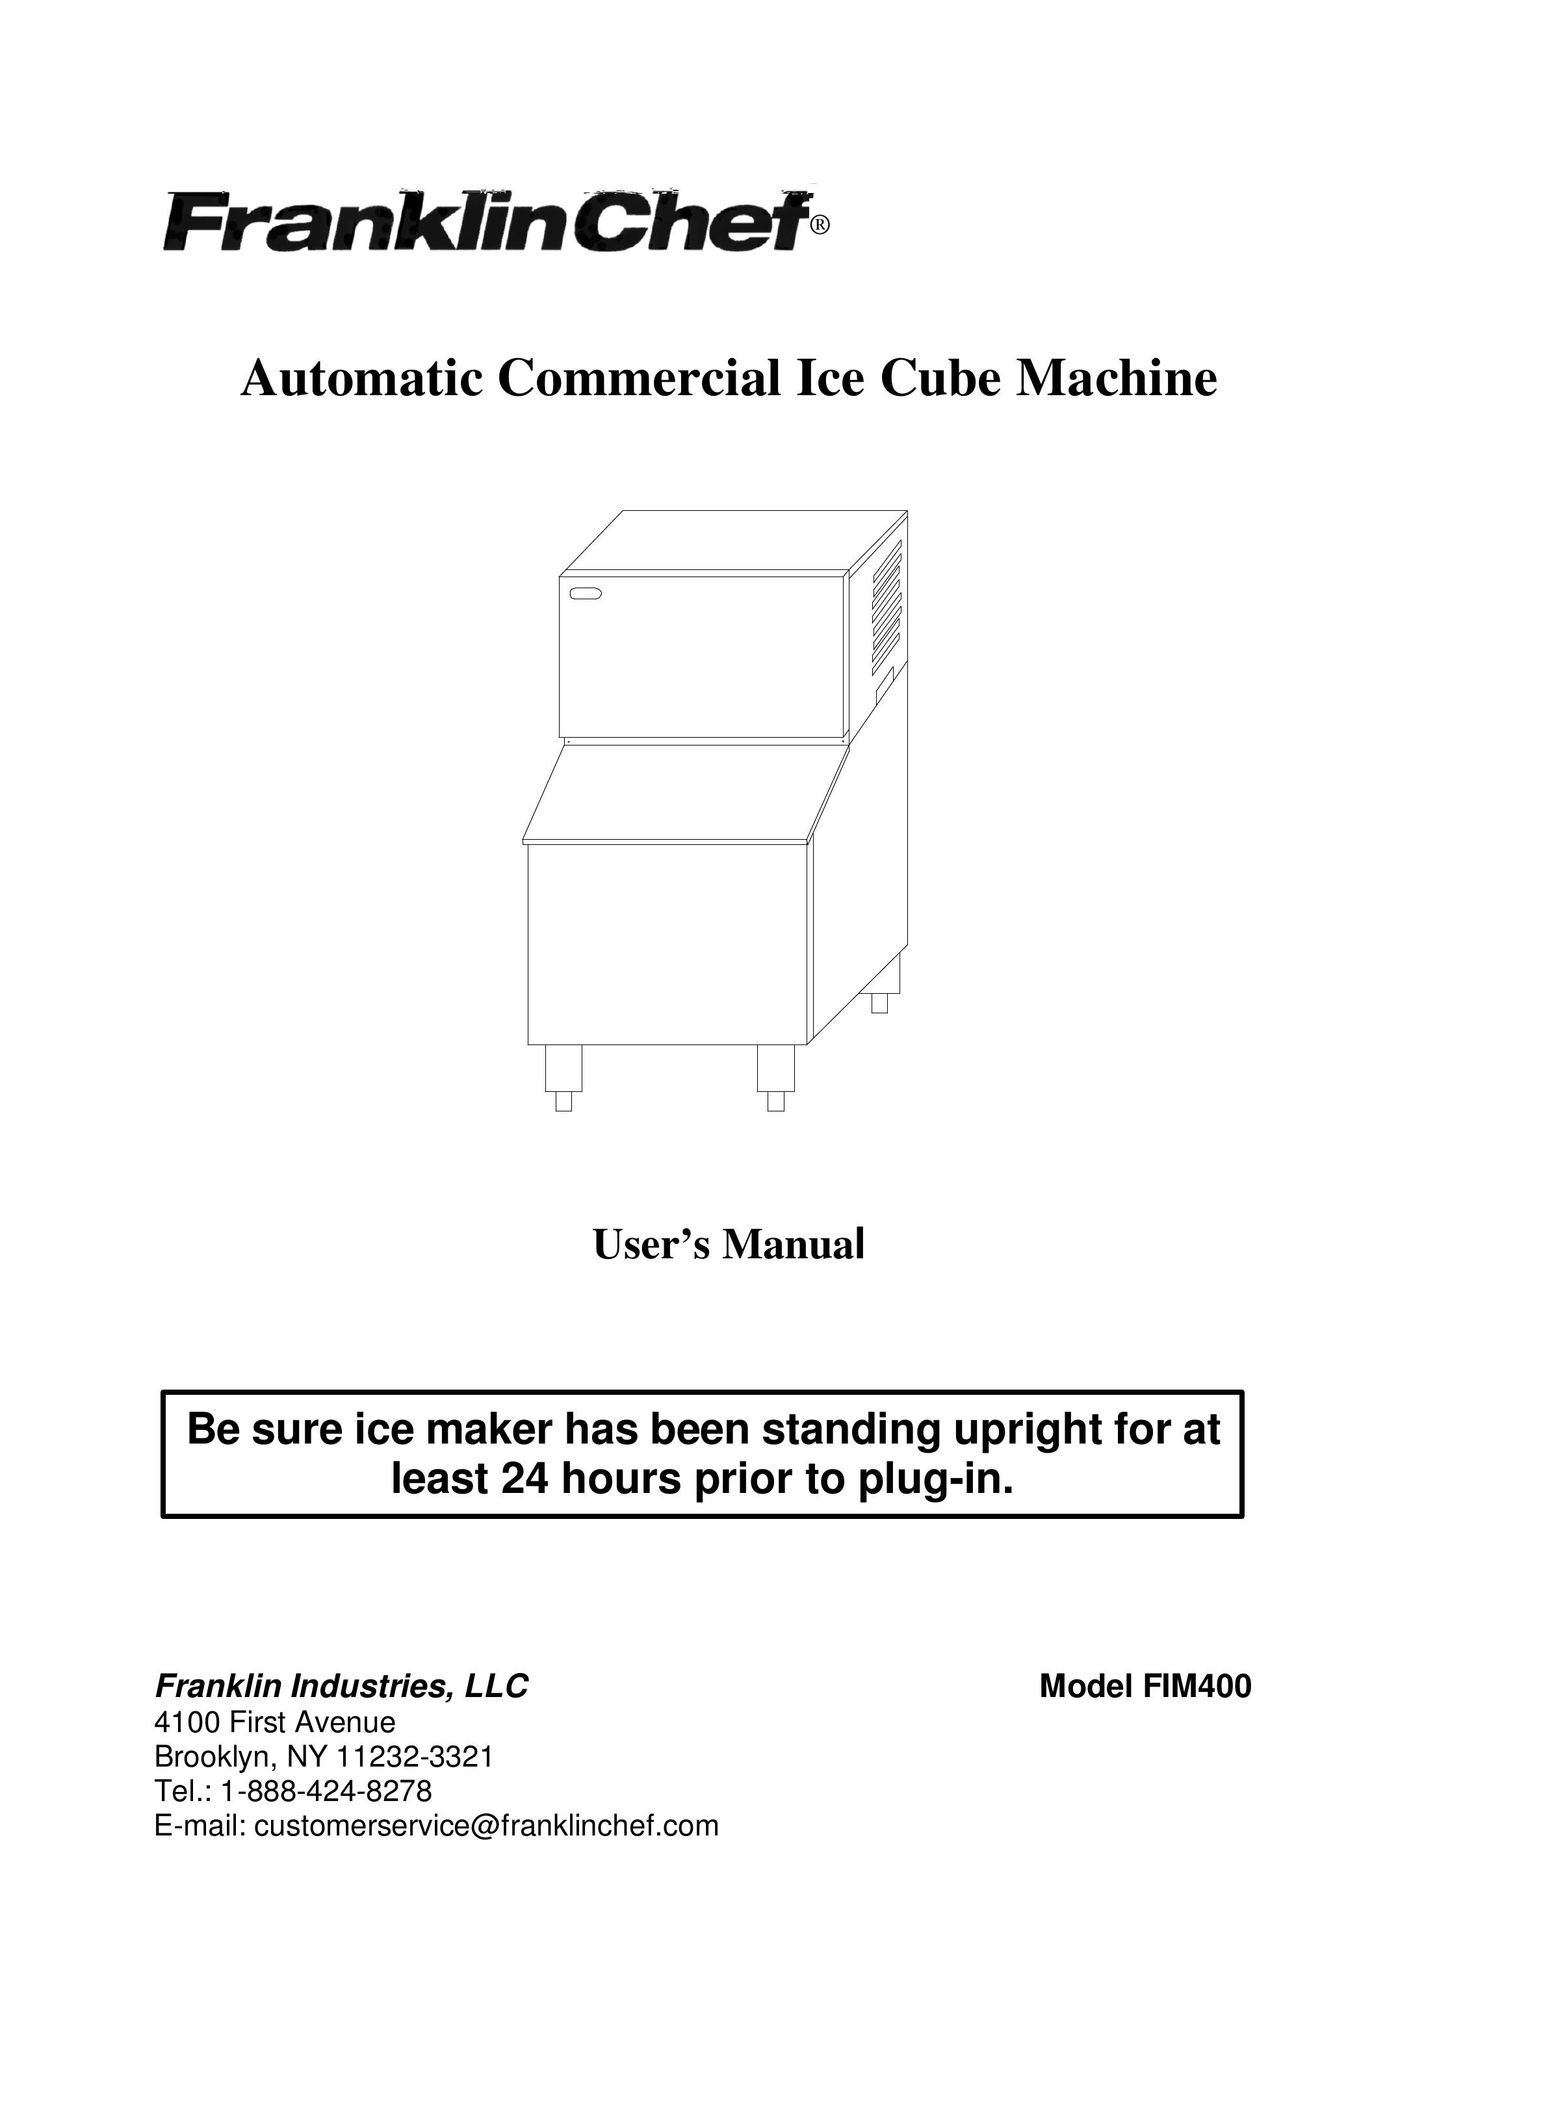 Franklin Industries, L.L.C. FIM400 4100 Ice Maker User Manual